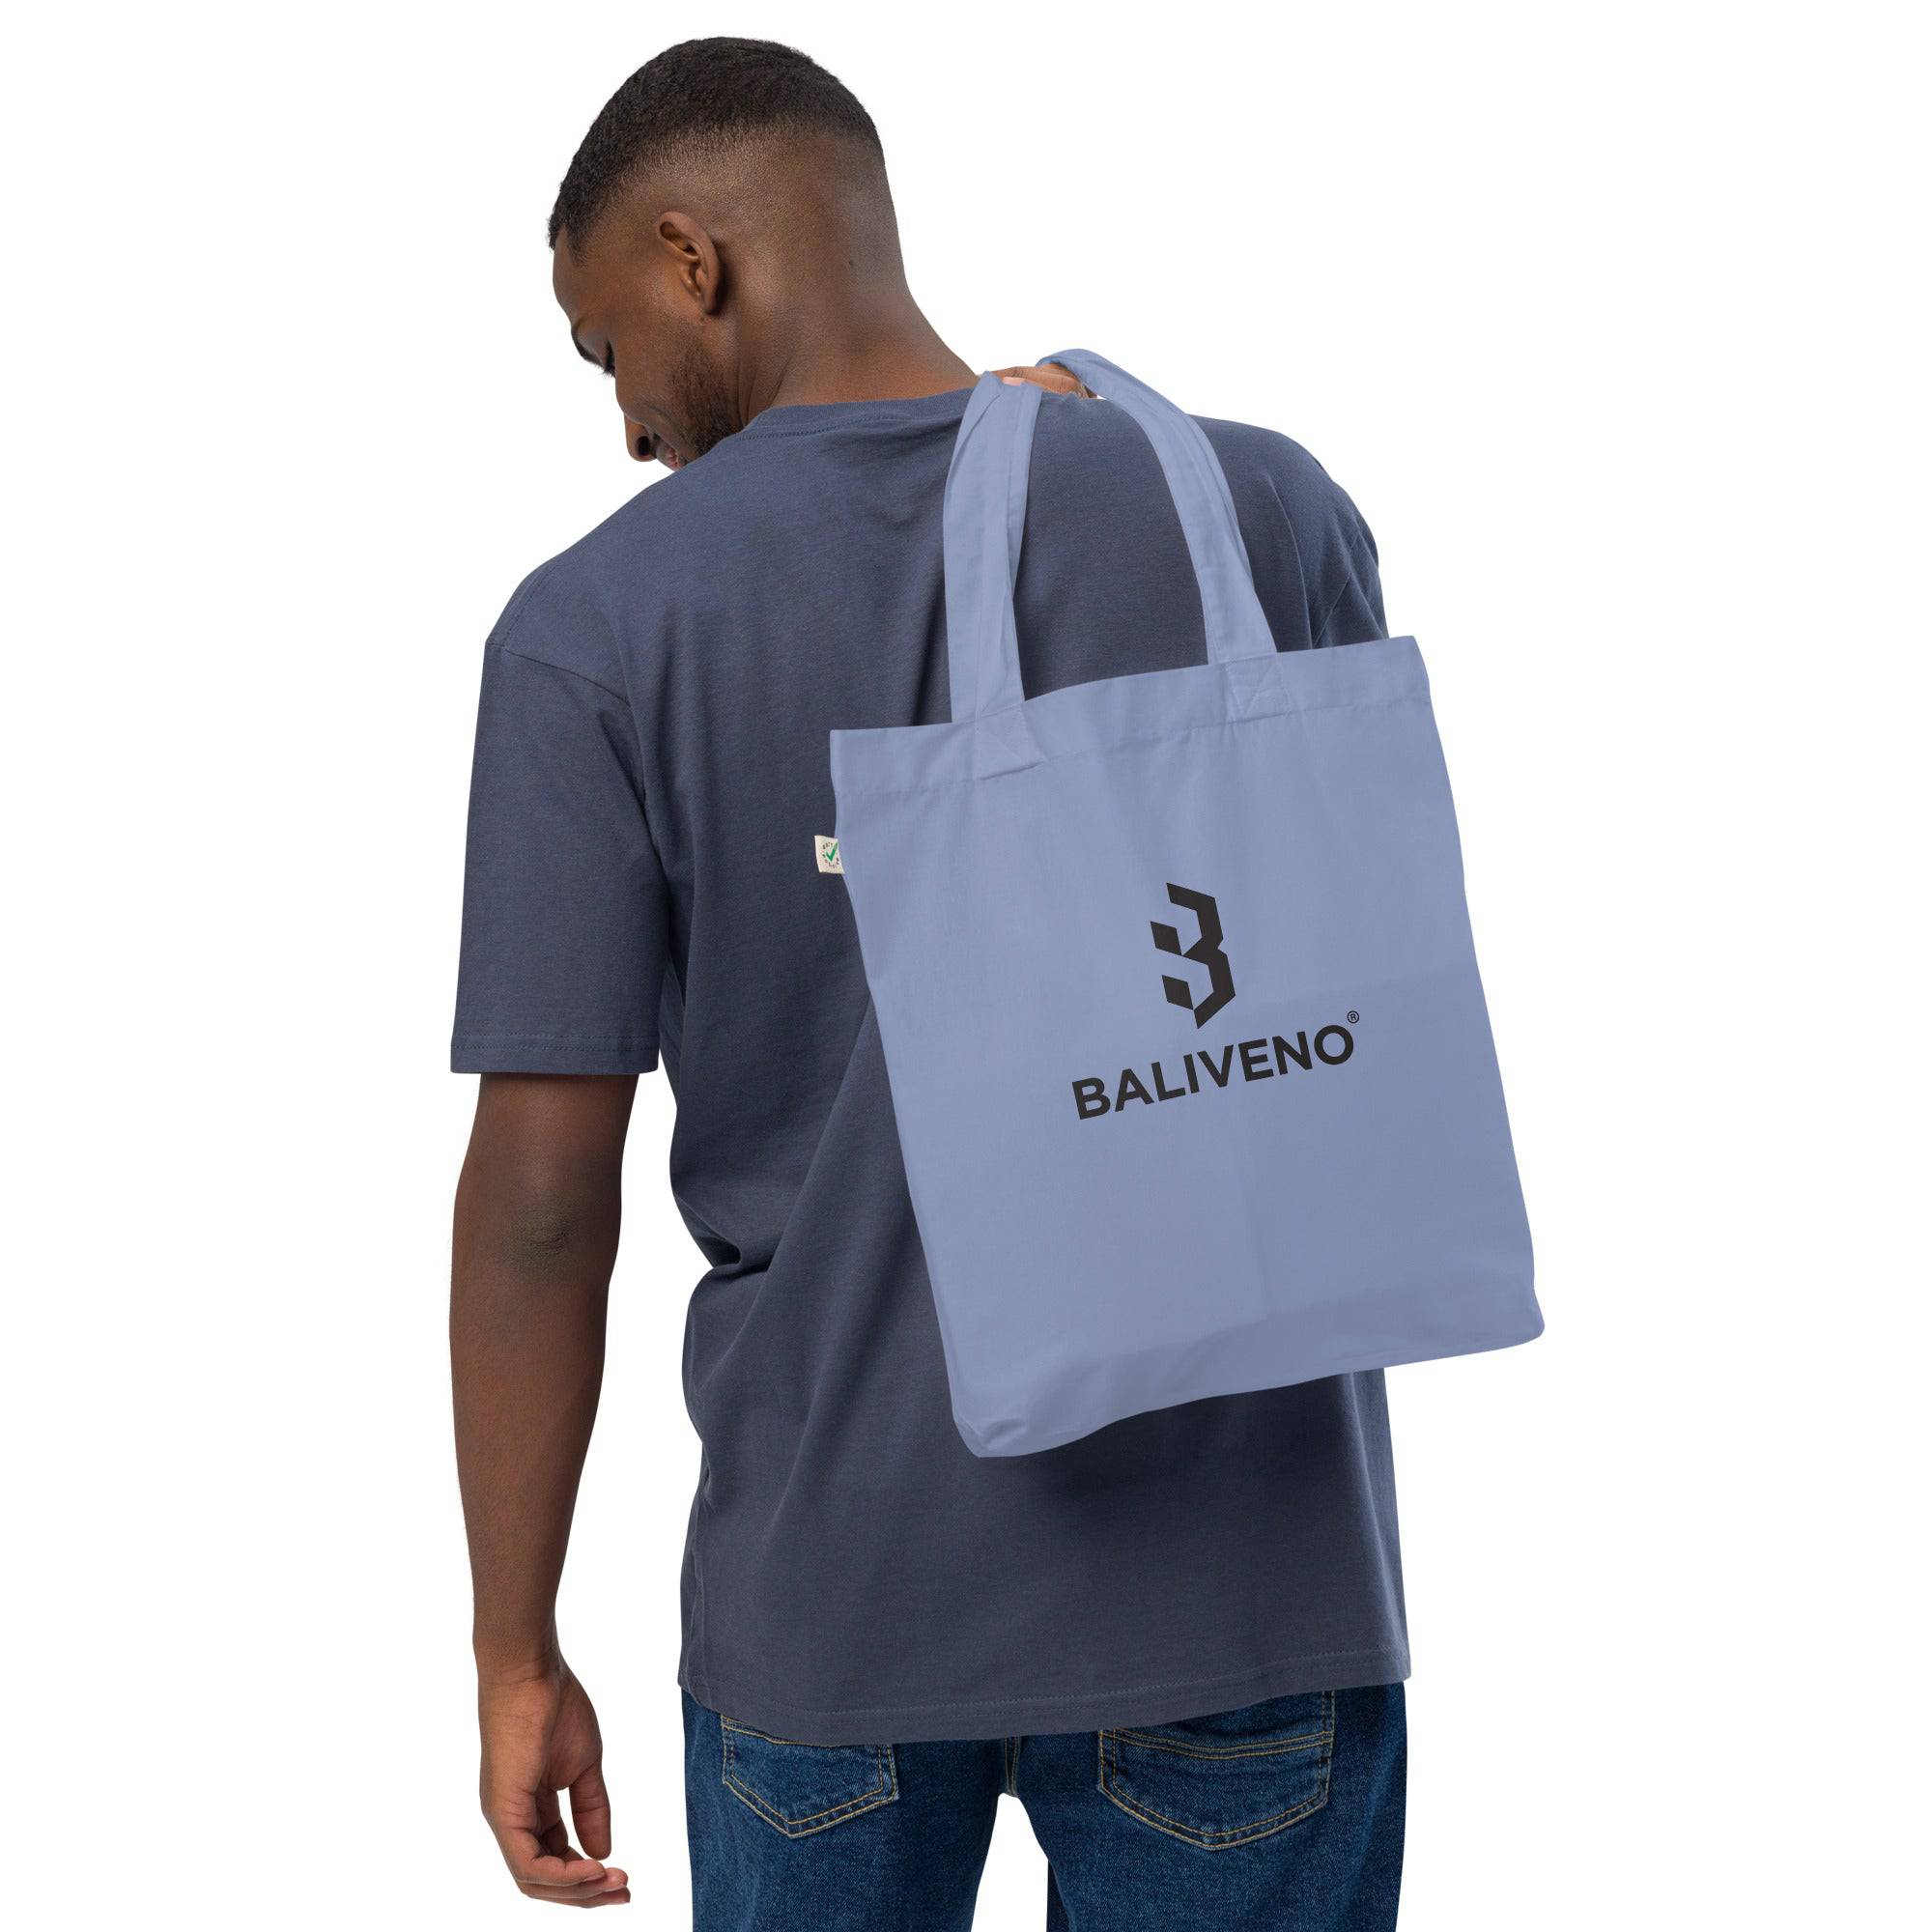 Organic fashion tote bag - BALIVENO